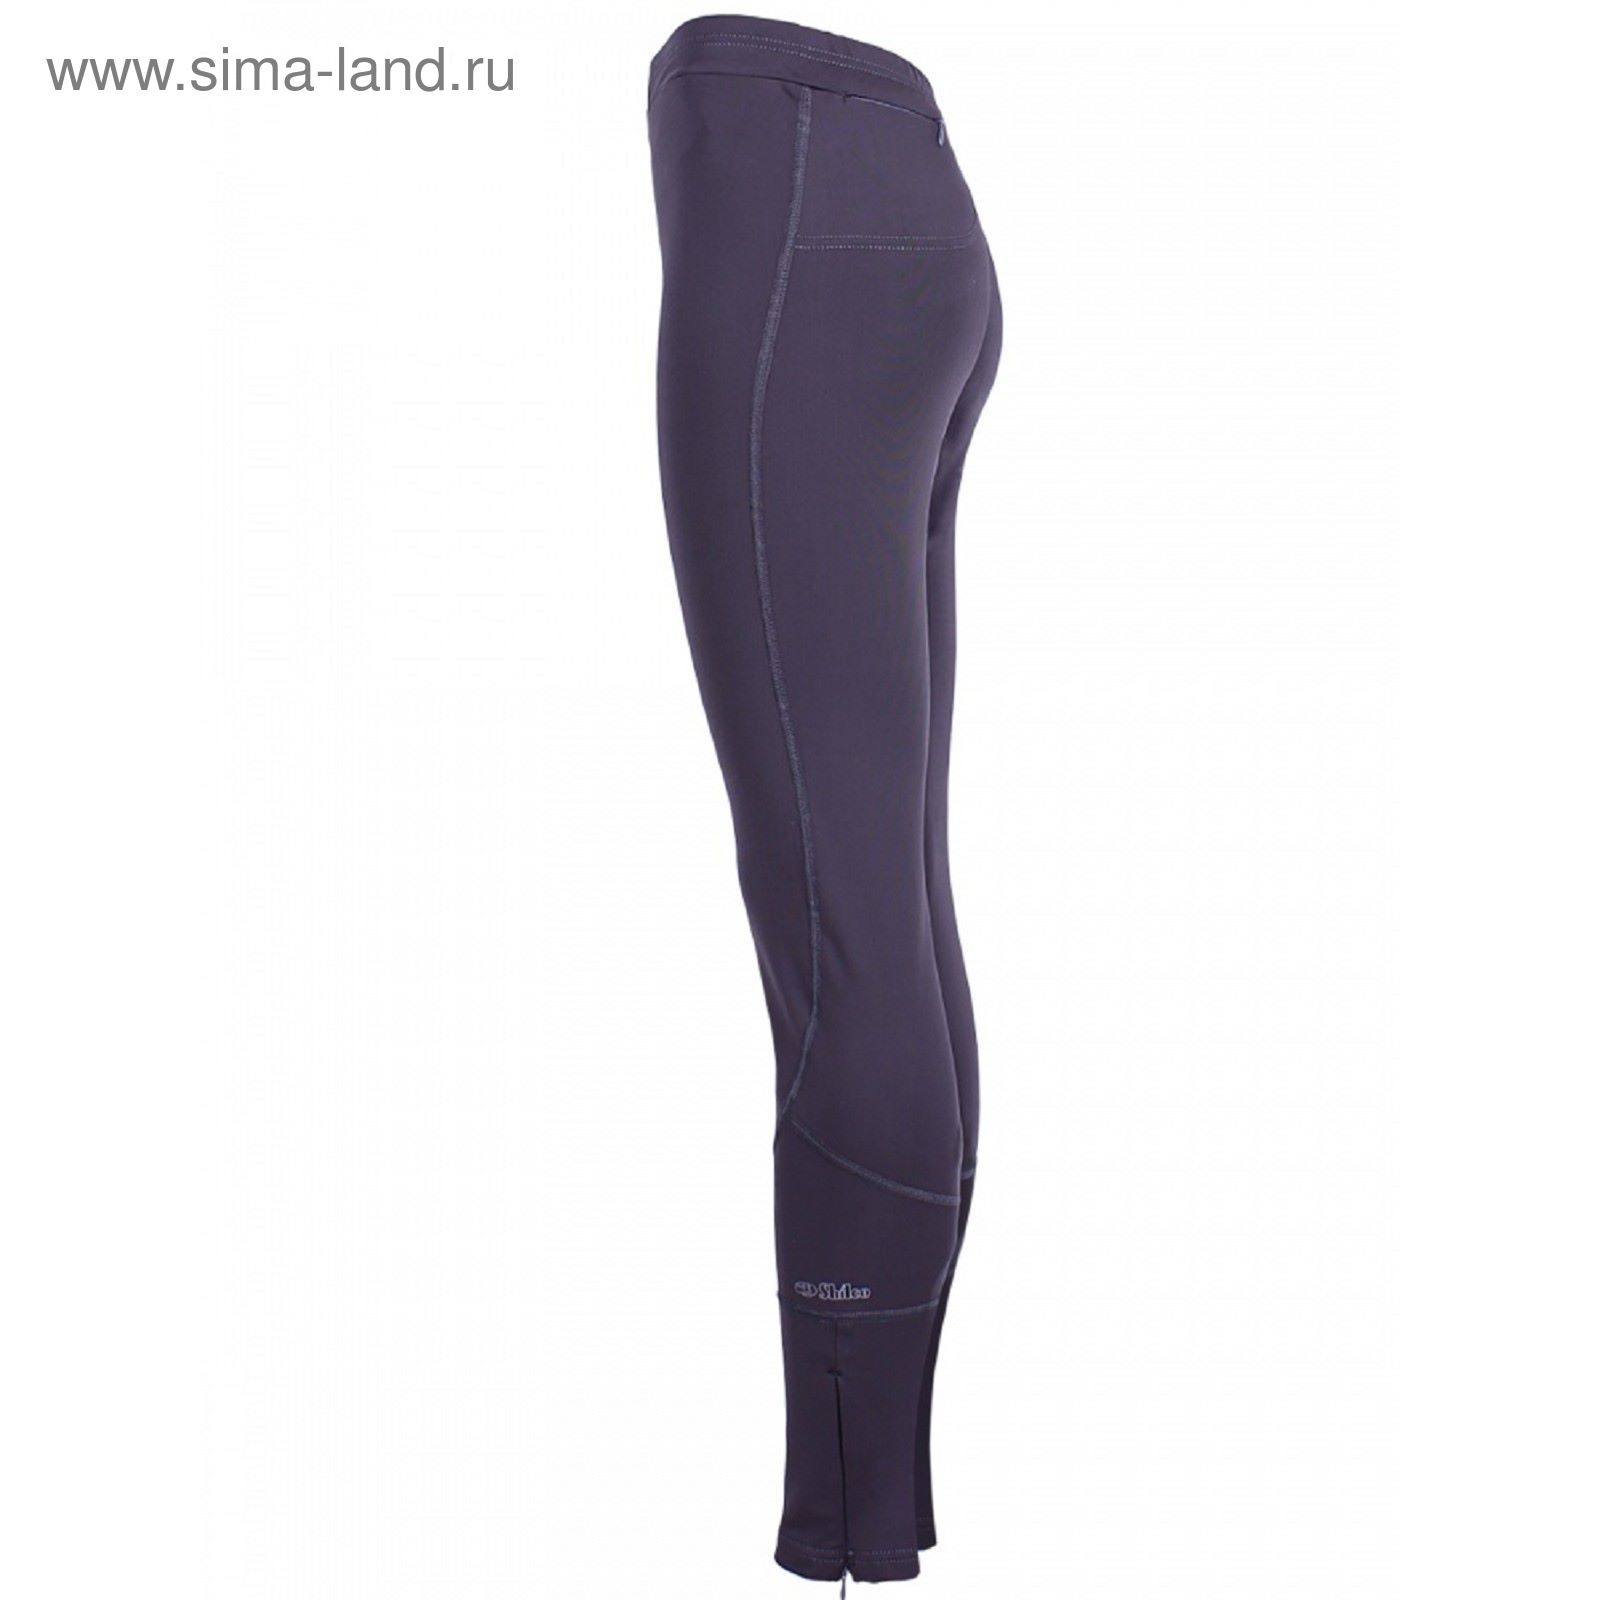 Брюки женские спортивные Termo Balance арт.420F18 цвет серый, рост 168, р-р 40 (XS)